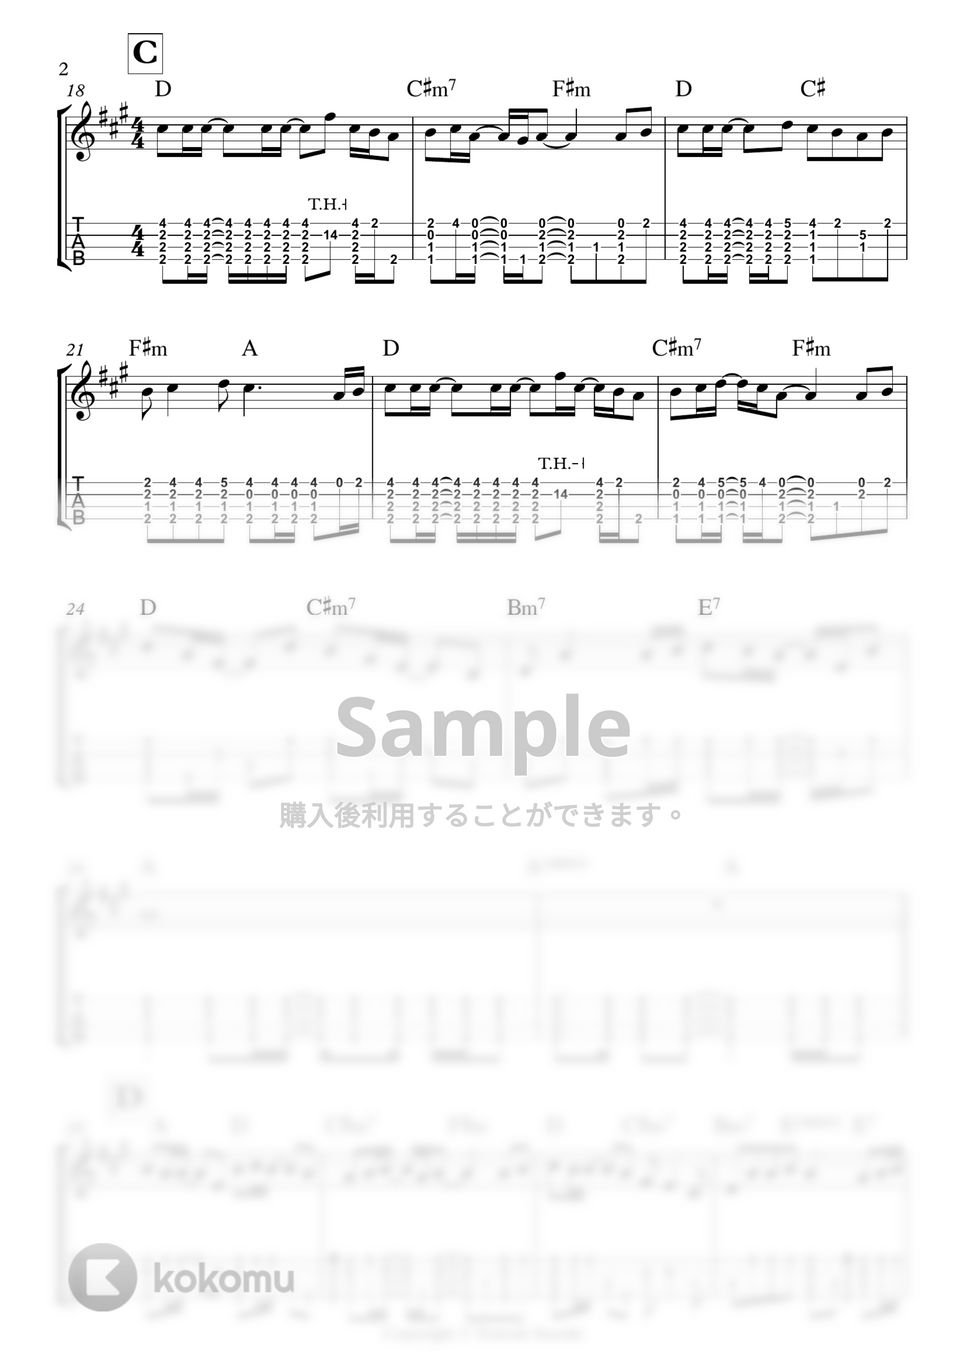 スキマスイッチ - 奏 by 鈴木智貴